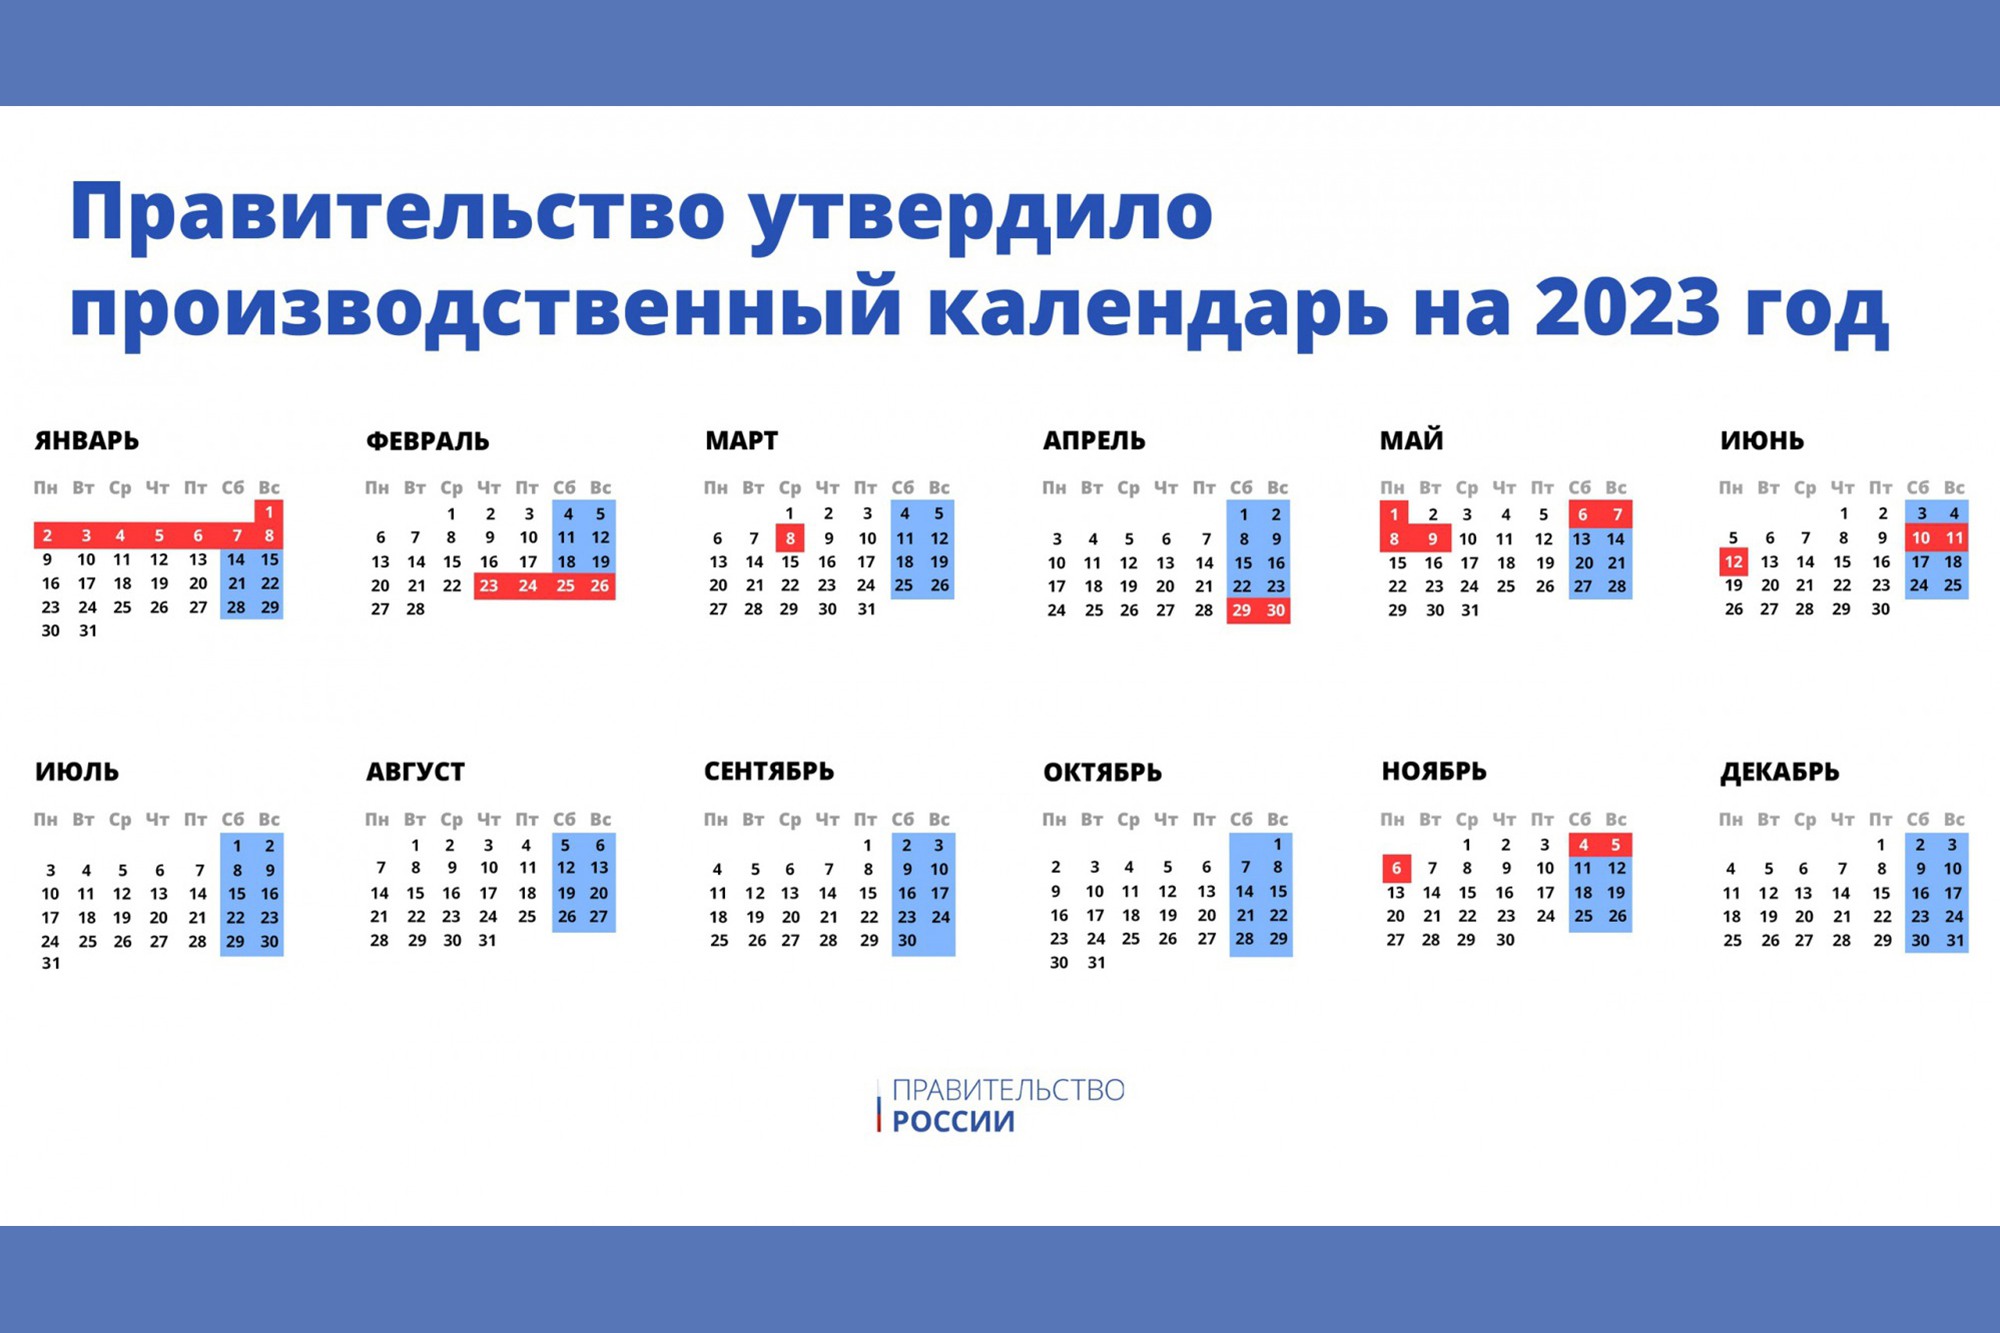 Правительство утвердило календарь выходных и праздников в 2023 году